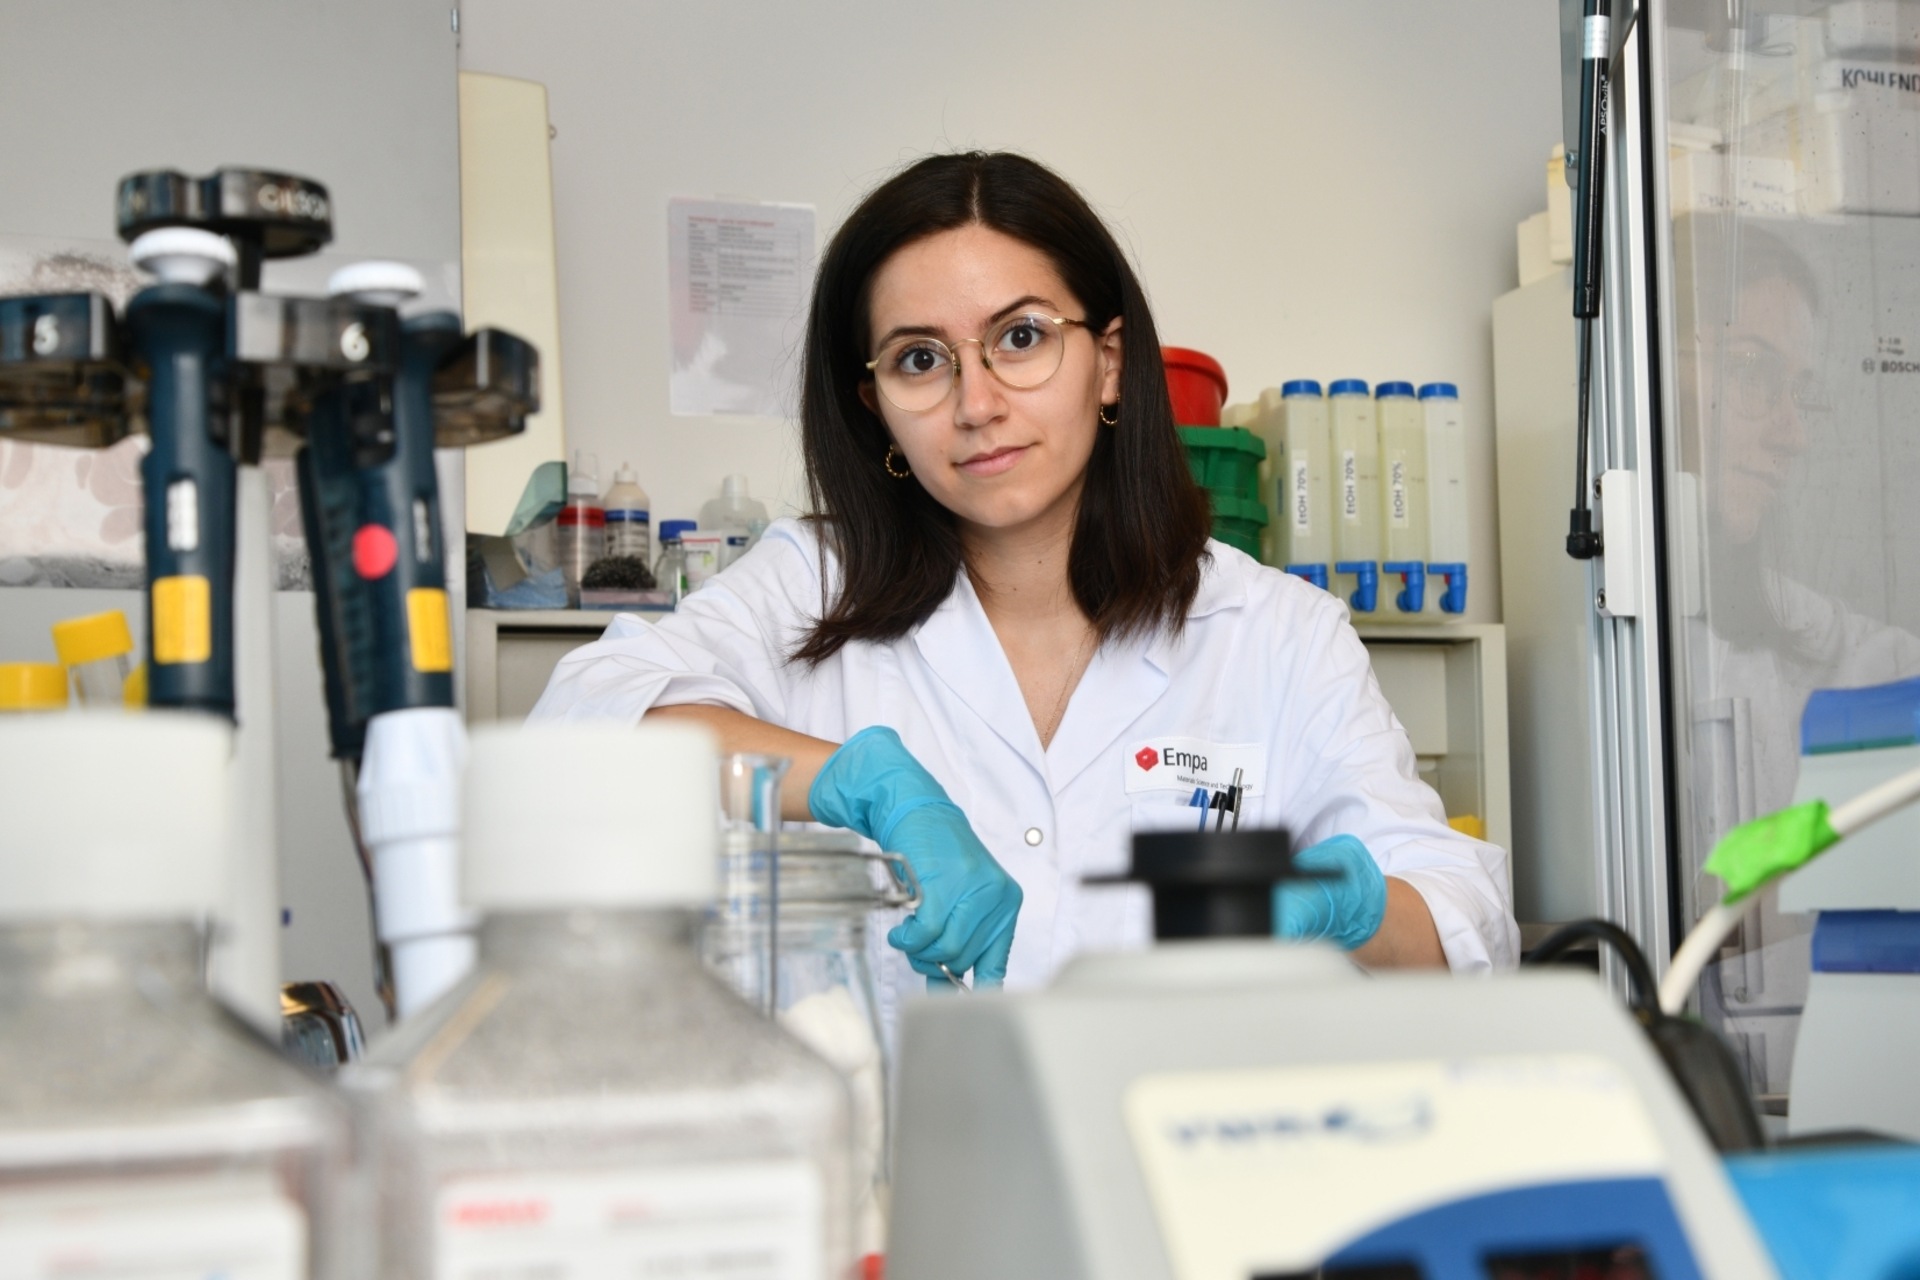 Manon Murdeu è ricercatrice dell'EMPA presso il Laboratorio Particles-Biology Interactions di San Gallo